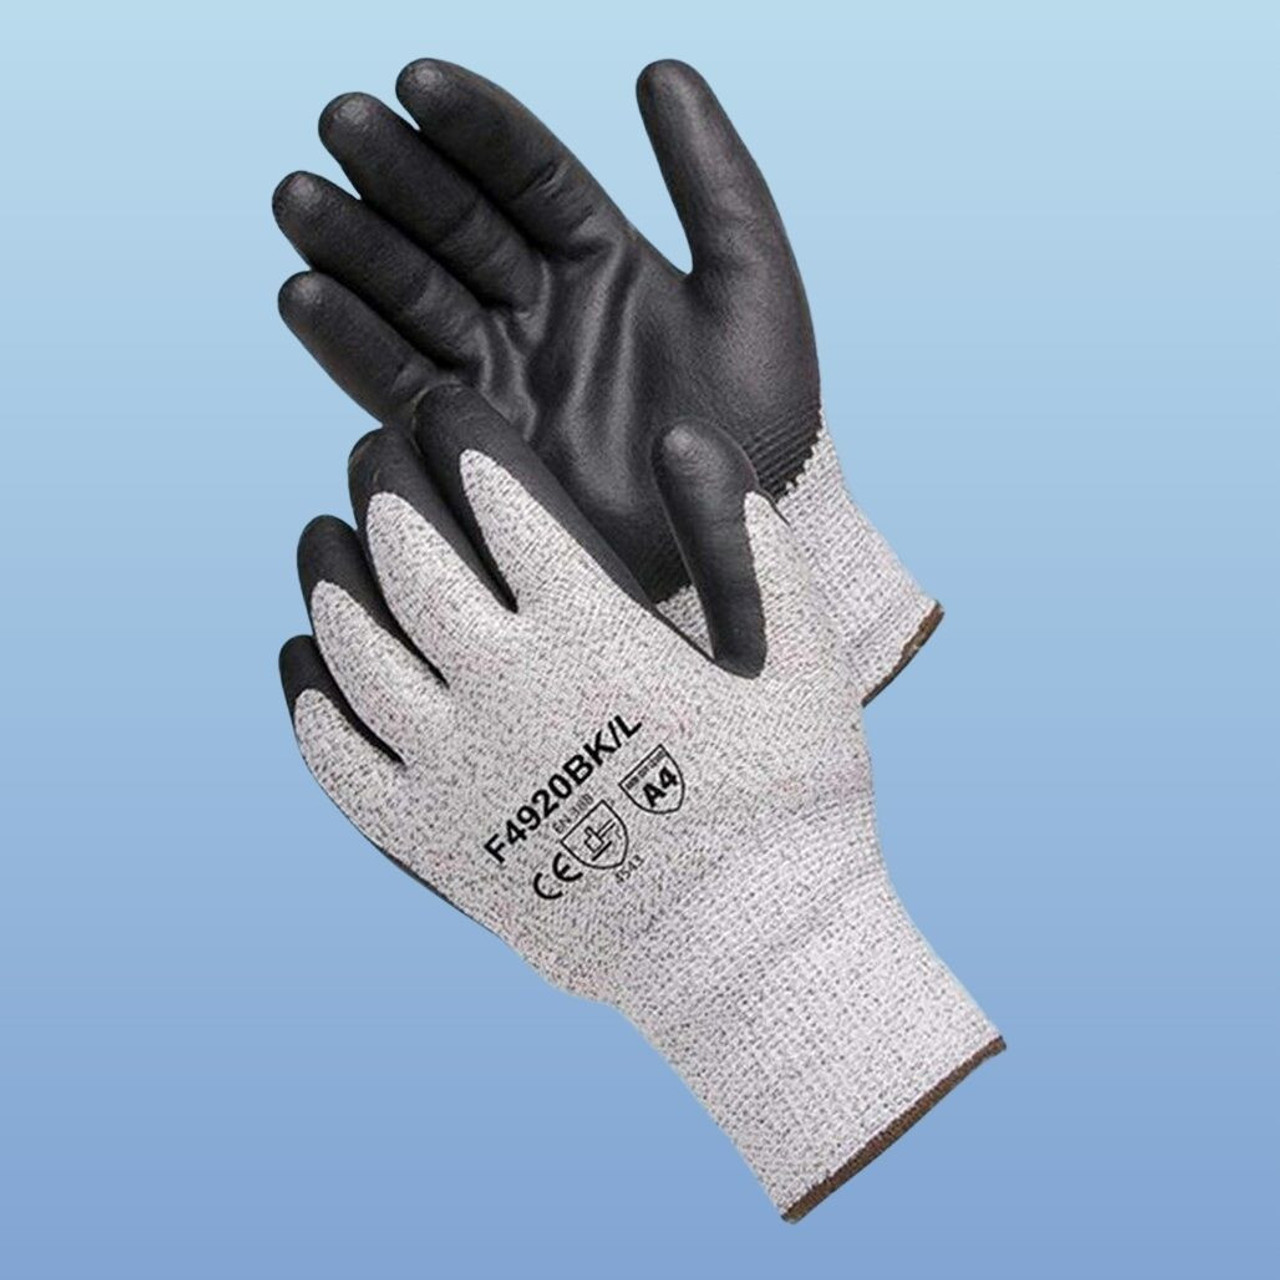 Cut Resistant Gloves/Hppe Cut 5 Level Liner Nitrile Sandy Coated